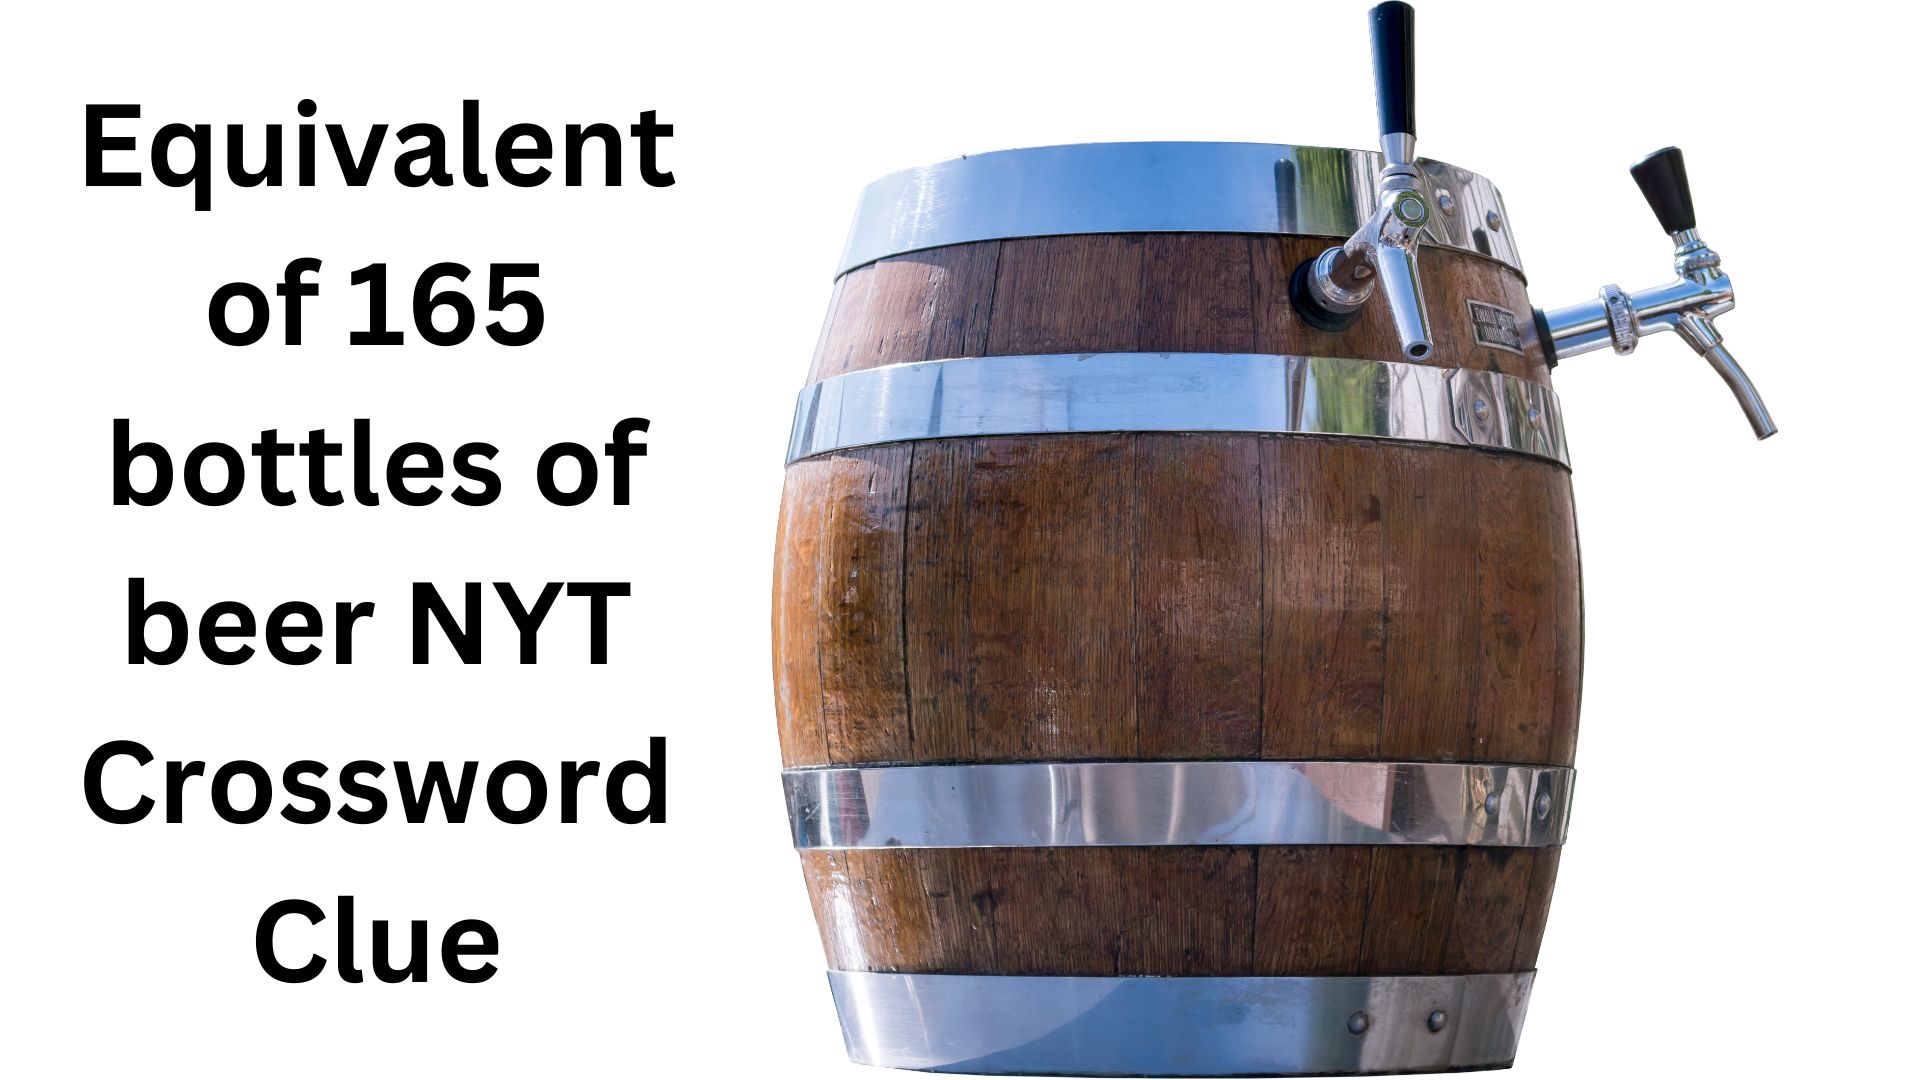 Equivalent of 165 bottles of beer NYT Crossword Clue